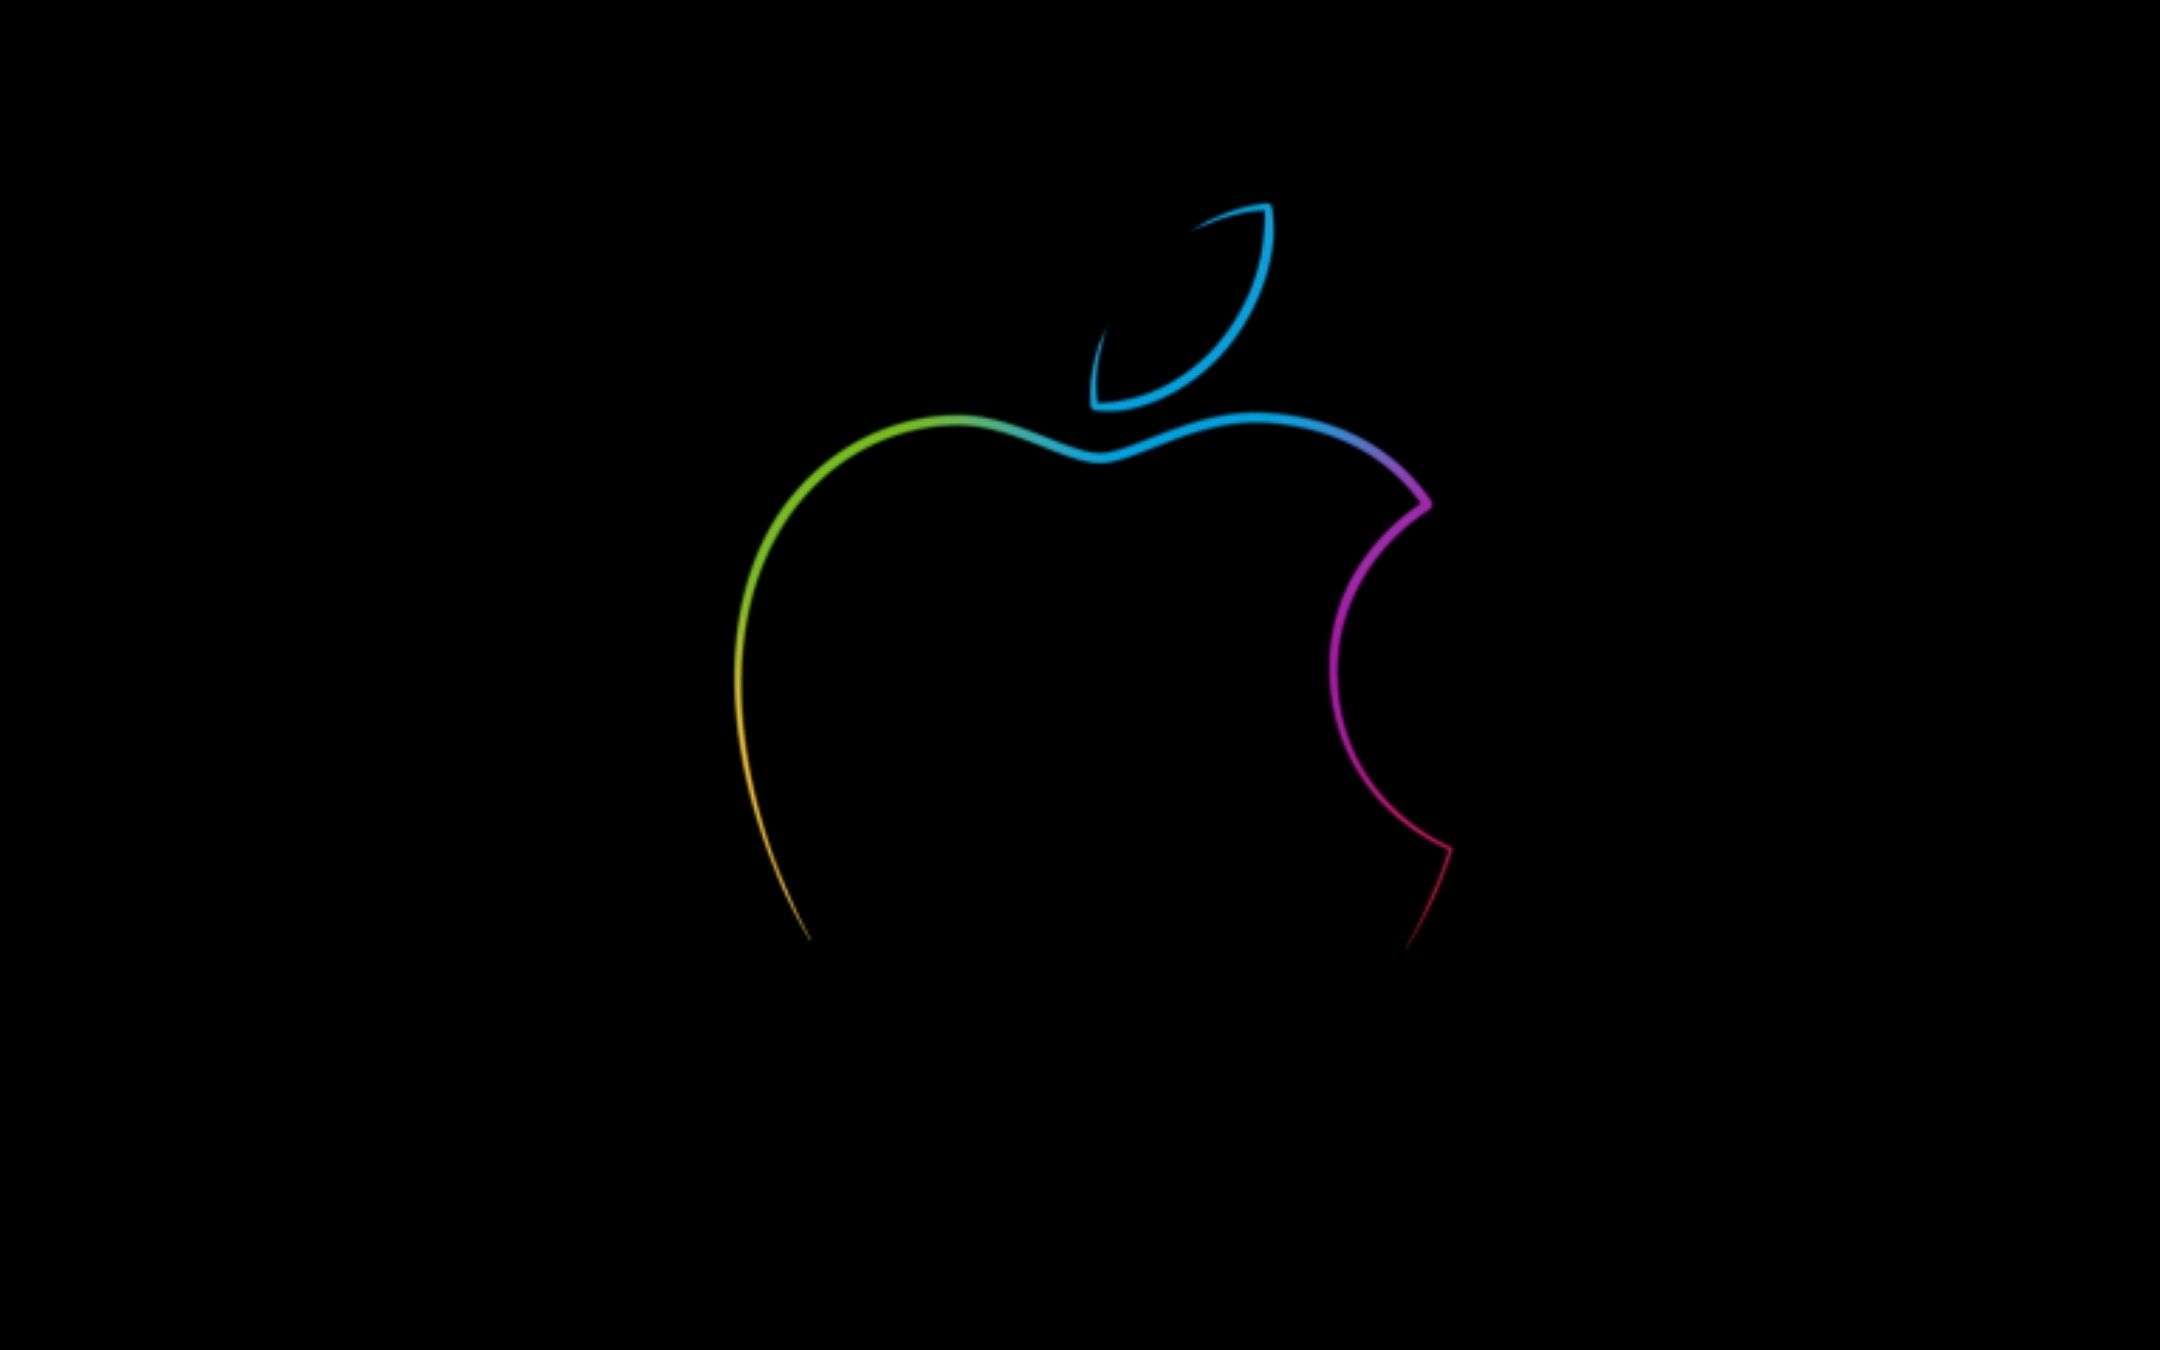 L'Apple Store è DOWN, ma c'è un OTTIMO motivo